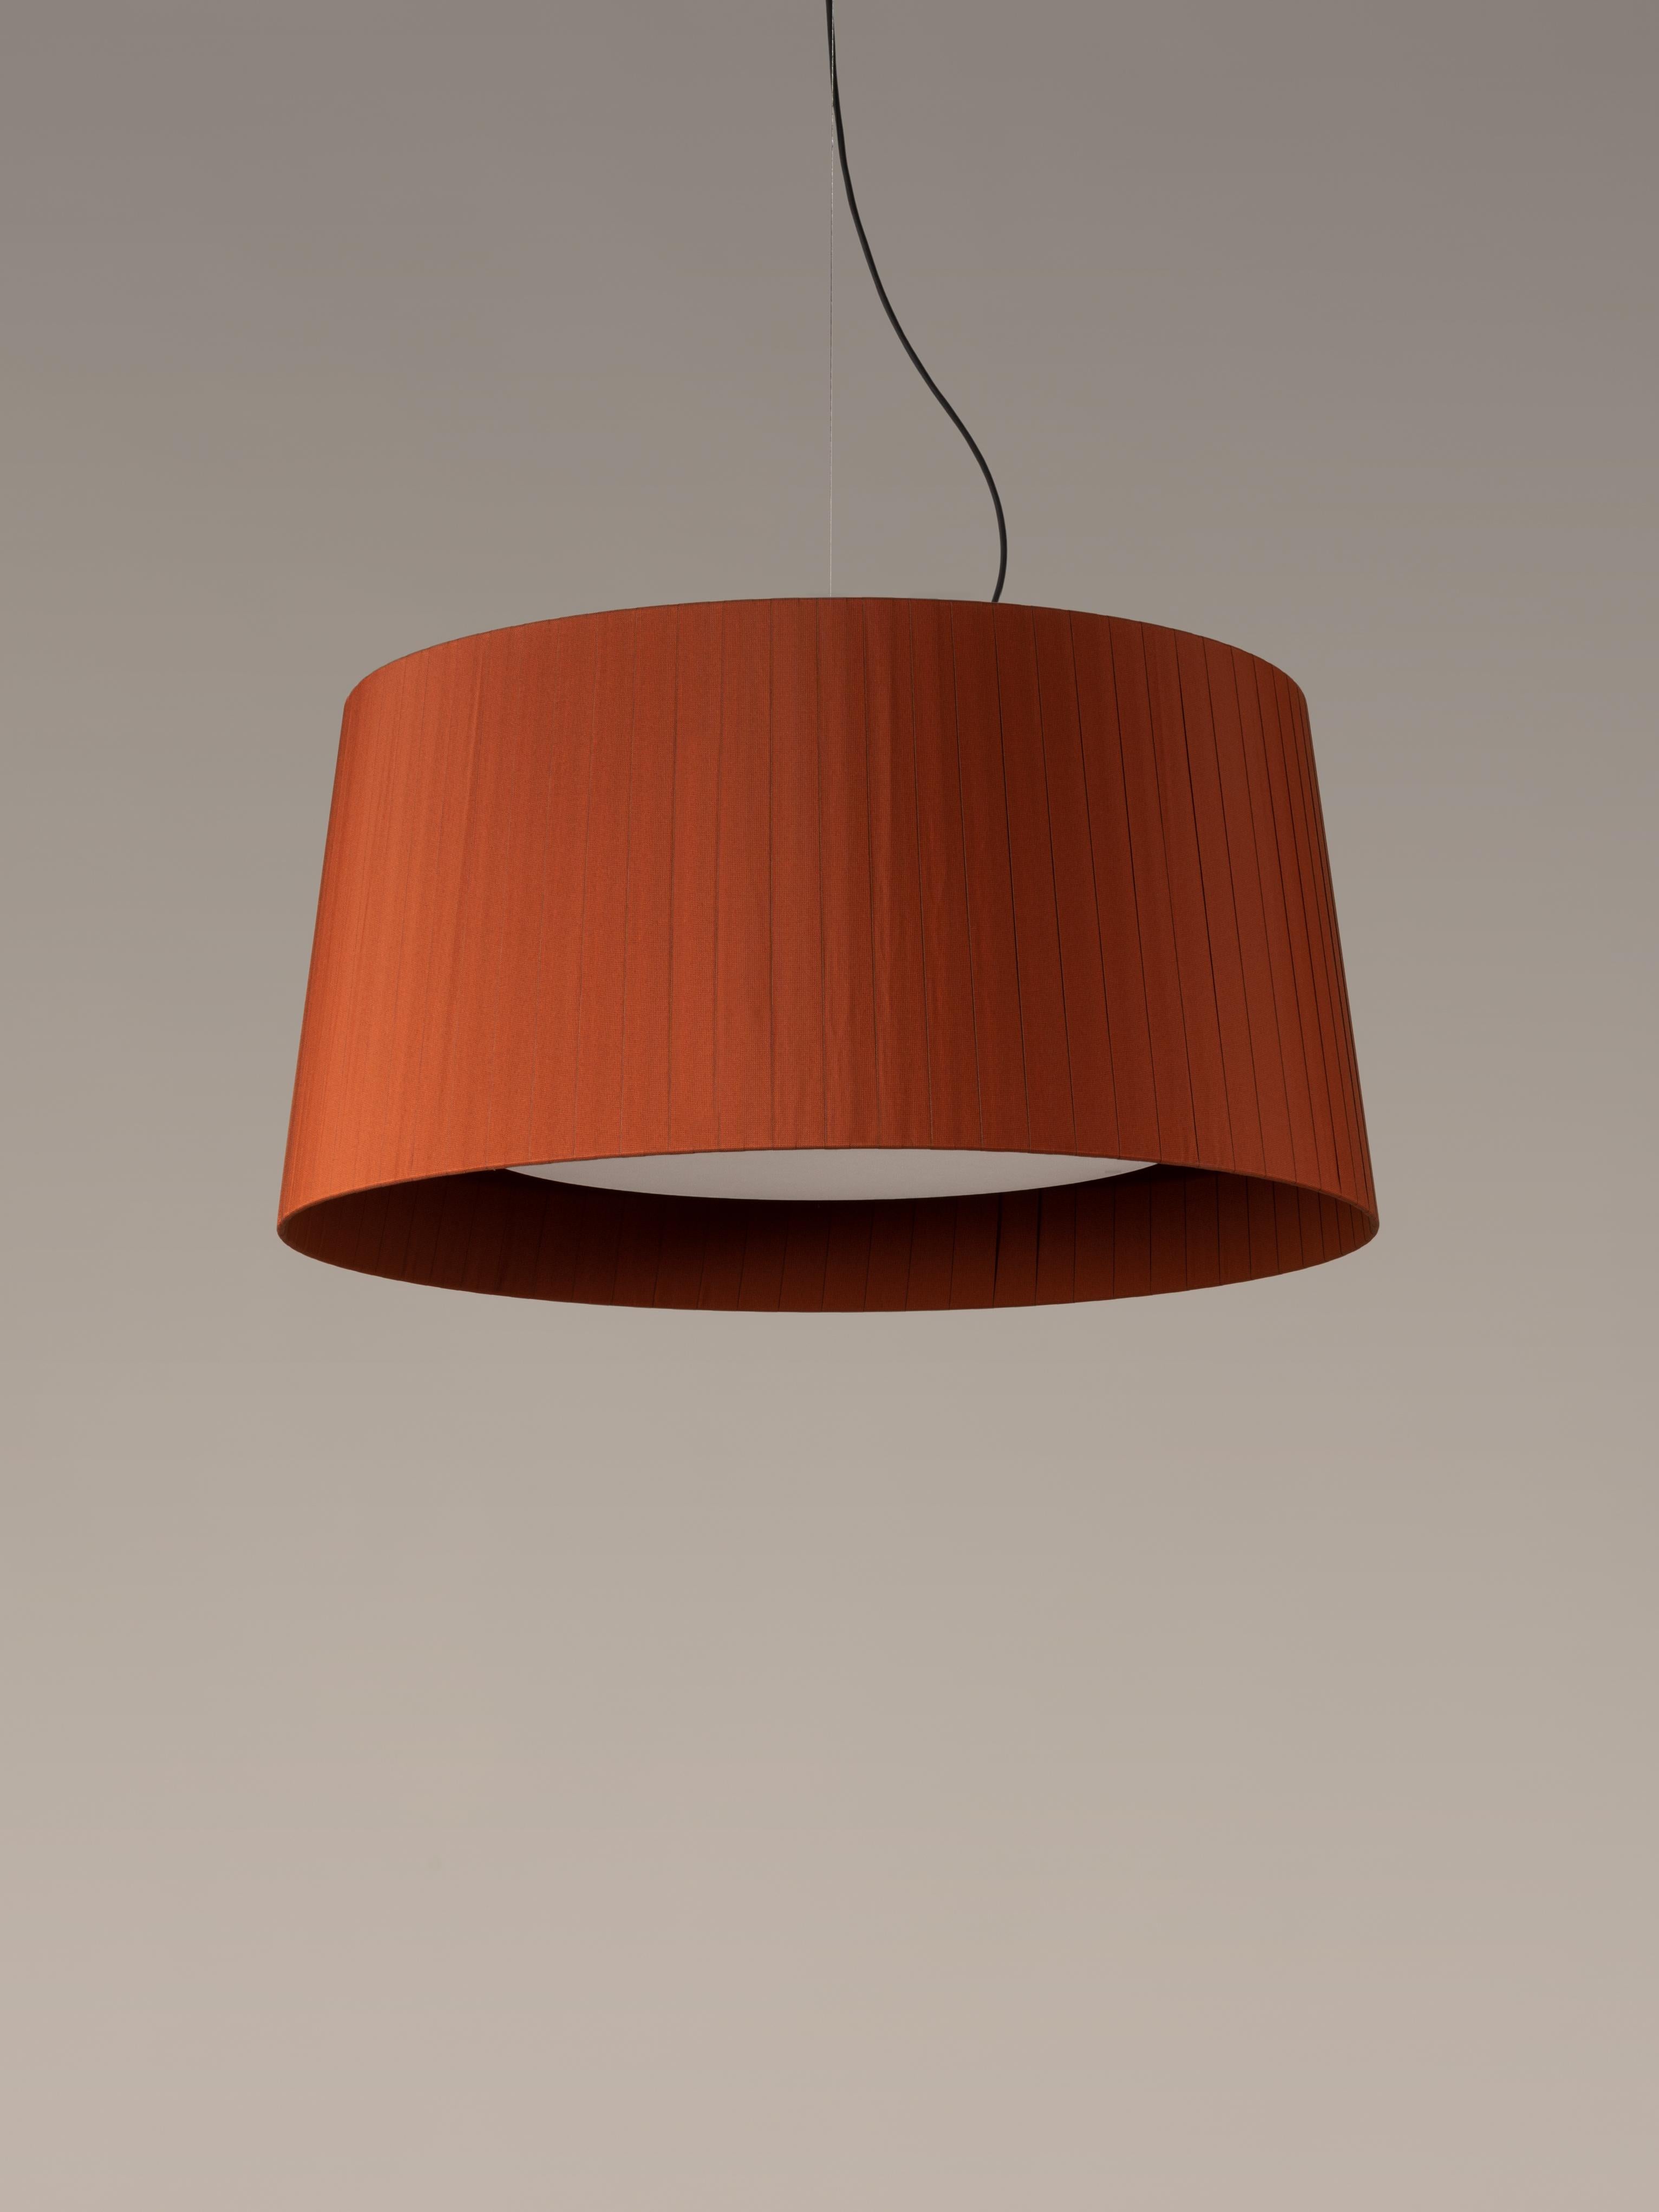 Lampe pendante Terracotta GT7 de Santa & Cole
Dimensions : D 90 x H 44 cm
Matériaux : Métal, ruban.
Disponible dans d'autres couleurs.

Conçu pour les volumes intermédiaires et les zones domestiques, le GT7 est plus grand et nécessite une structure